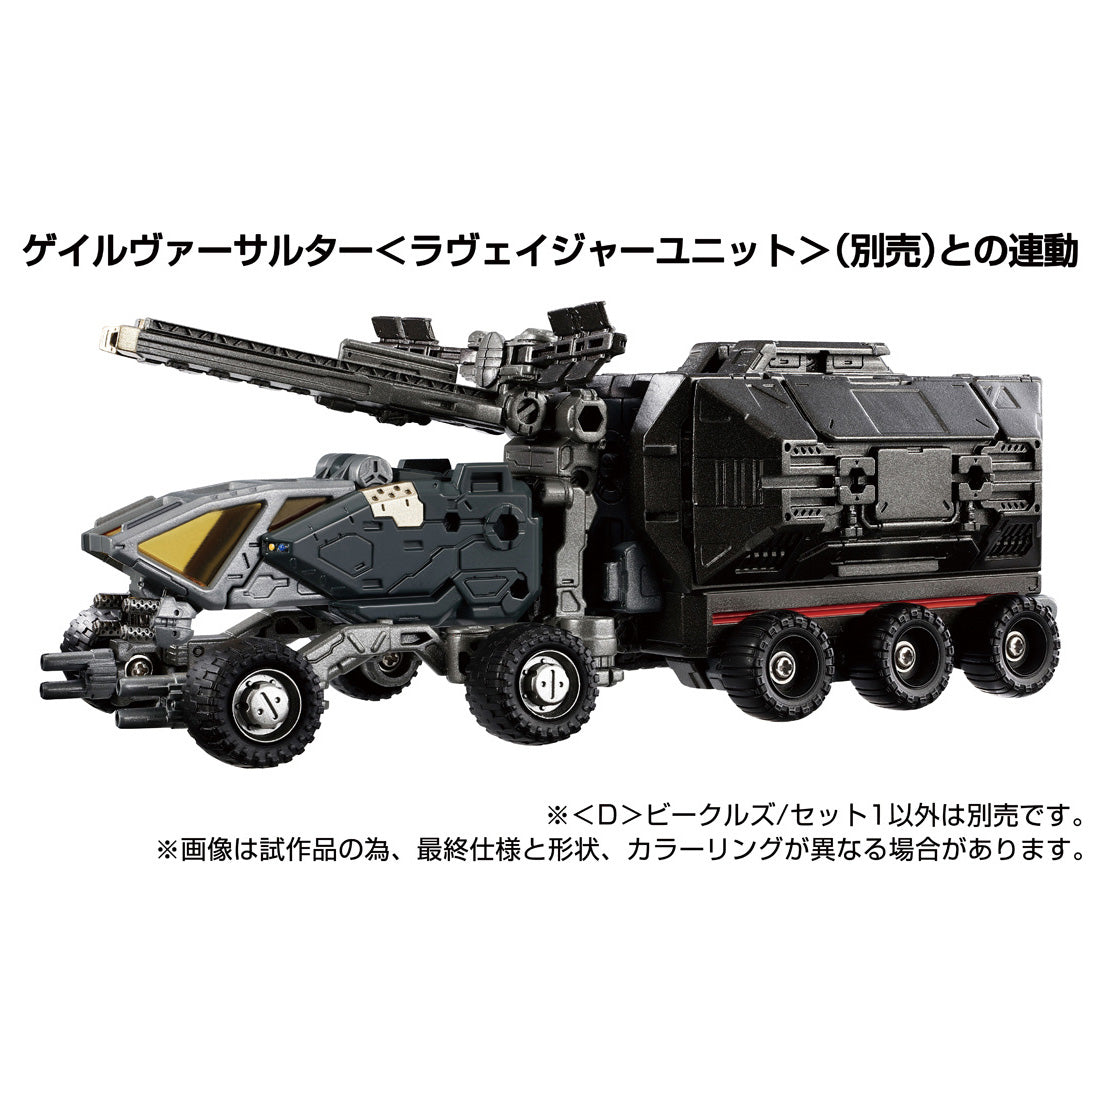 TakaraTomy - Diaclone - D-01  Vehicles Set 1 - Marvelous Toys